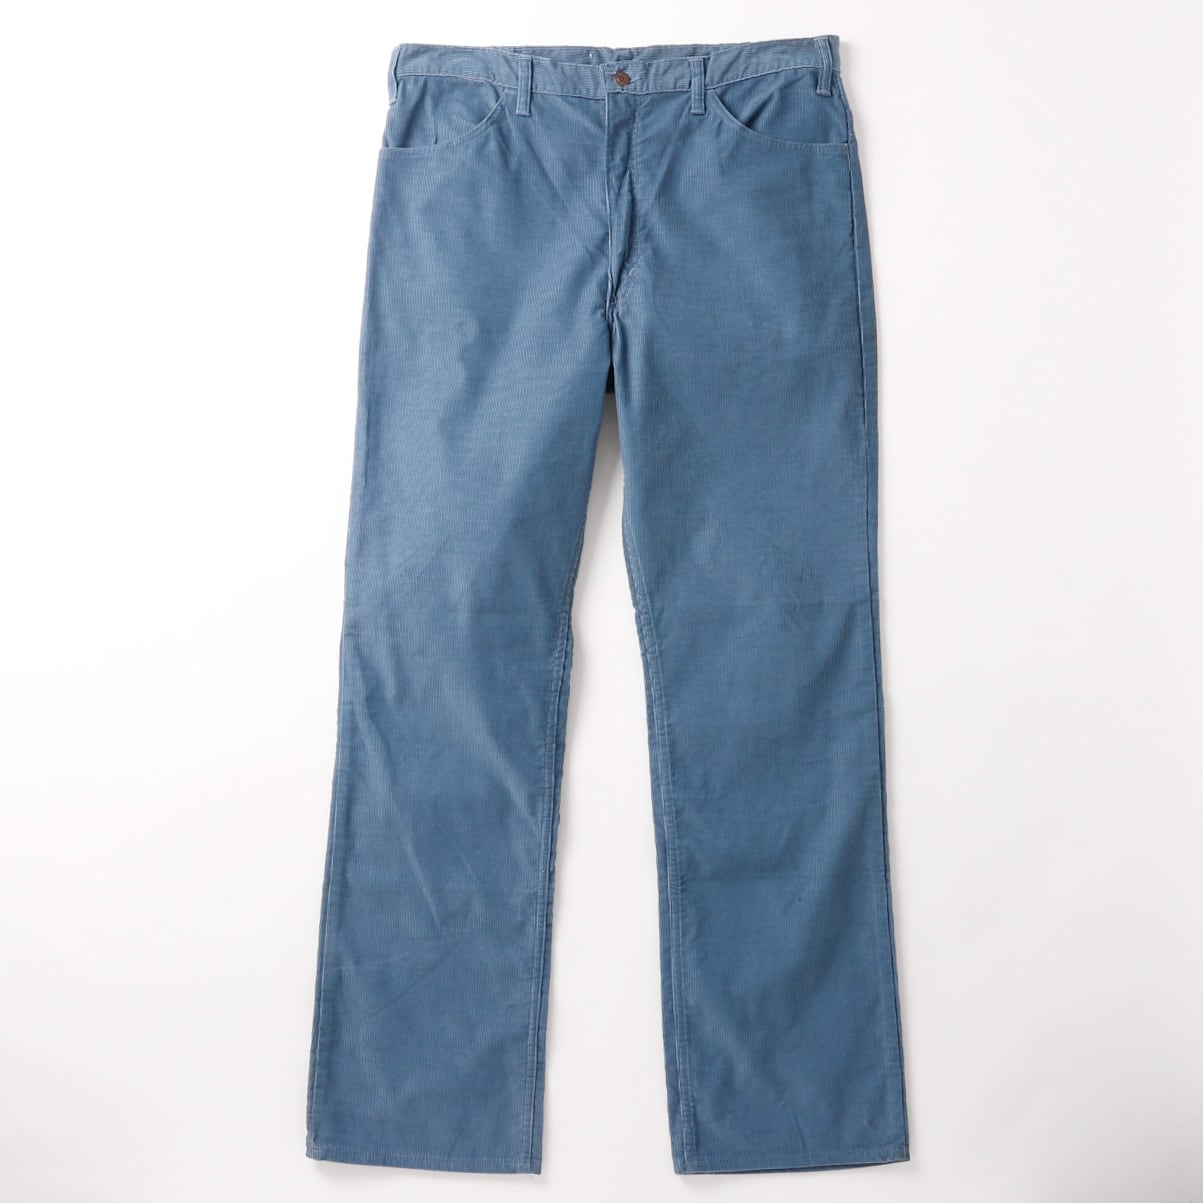 未使用】60s Vintage slacks corduroy pants made in USA w38 blue 42